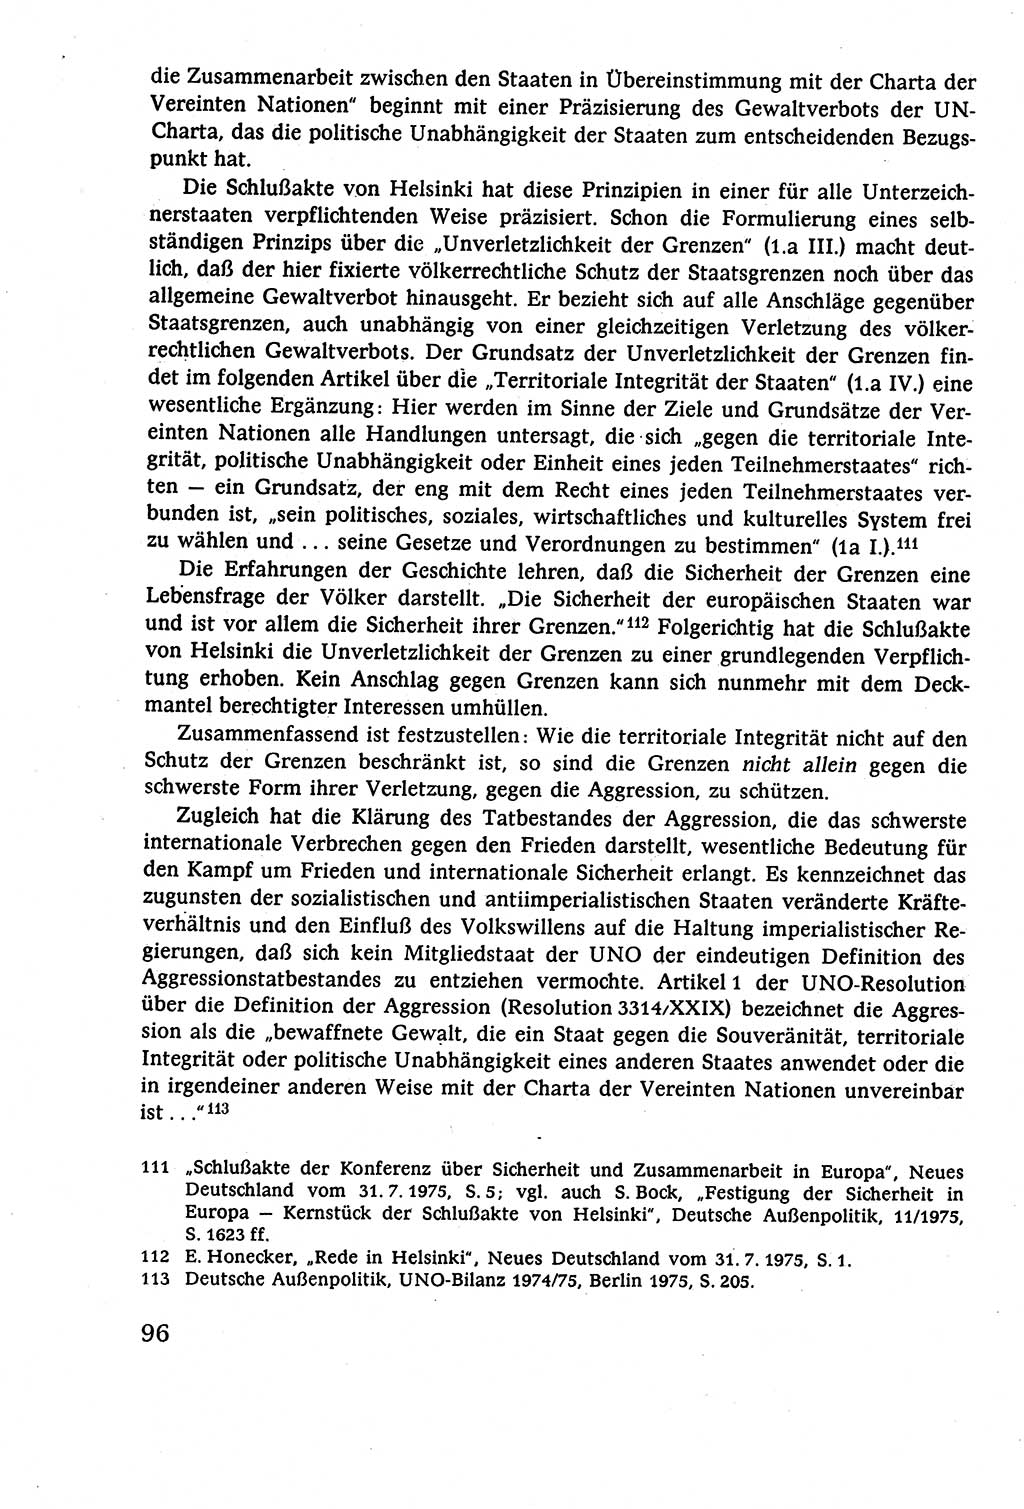 Staatsrecht der DDR (Deutsche Demokratische Republik), Lehrbuch 1977, Seite 96 (St.-R. DDR Lb. 1977, S. 96)